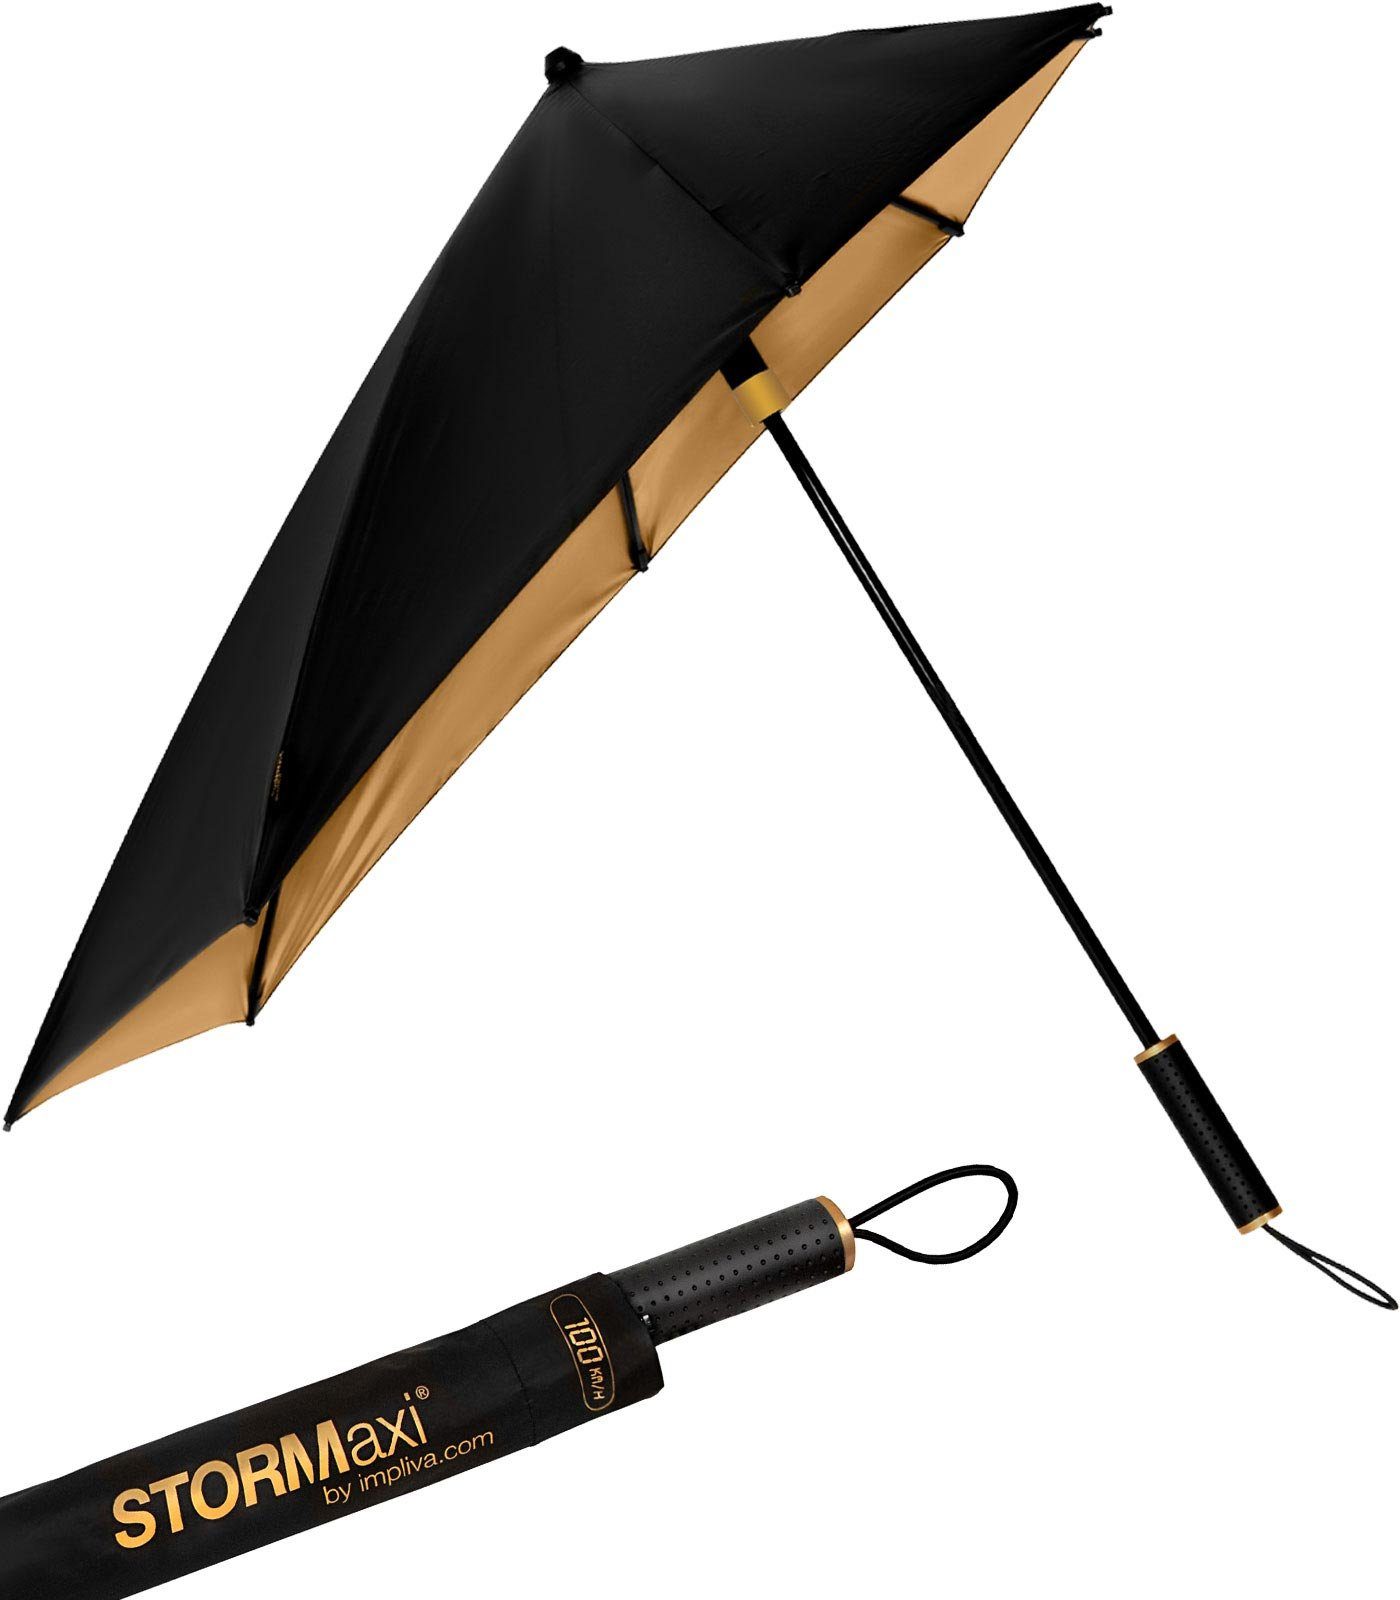 Stockregenschirm hält aus Wind, Metallic, den Sturmschirm zu km/h durch 80 Form sich aerodynamischer schwarz-gold in dreht Schirm besondere seine der Impliva STORMaxi bis